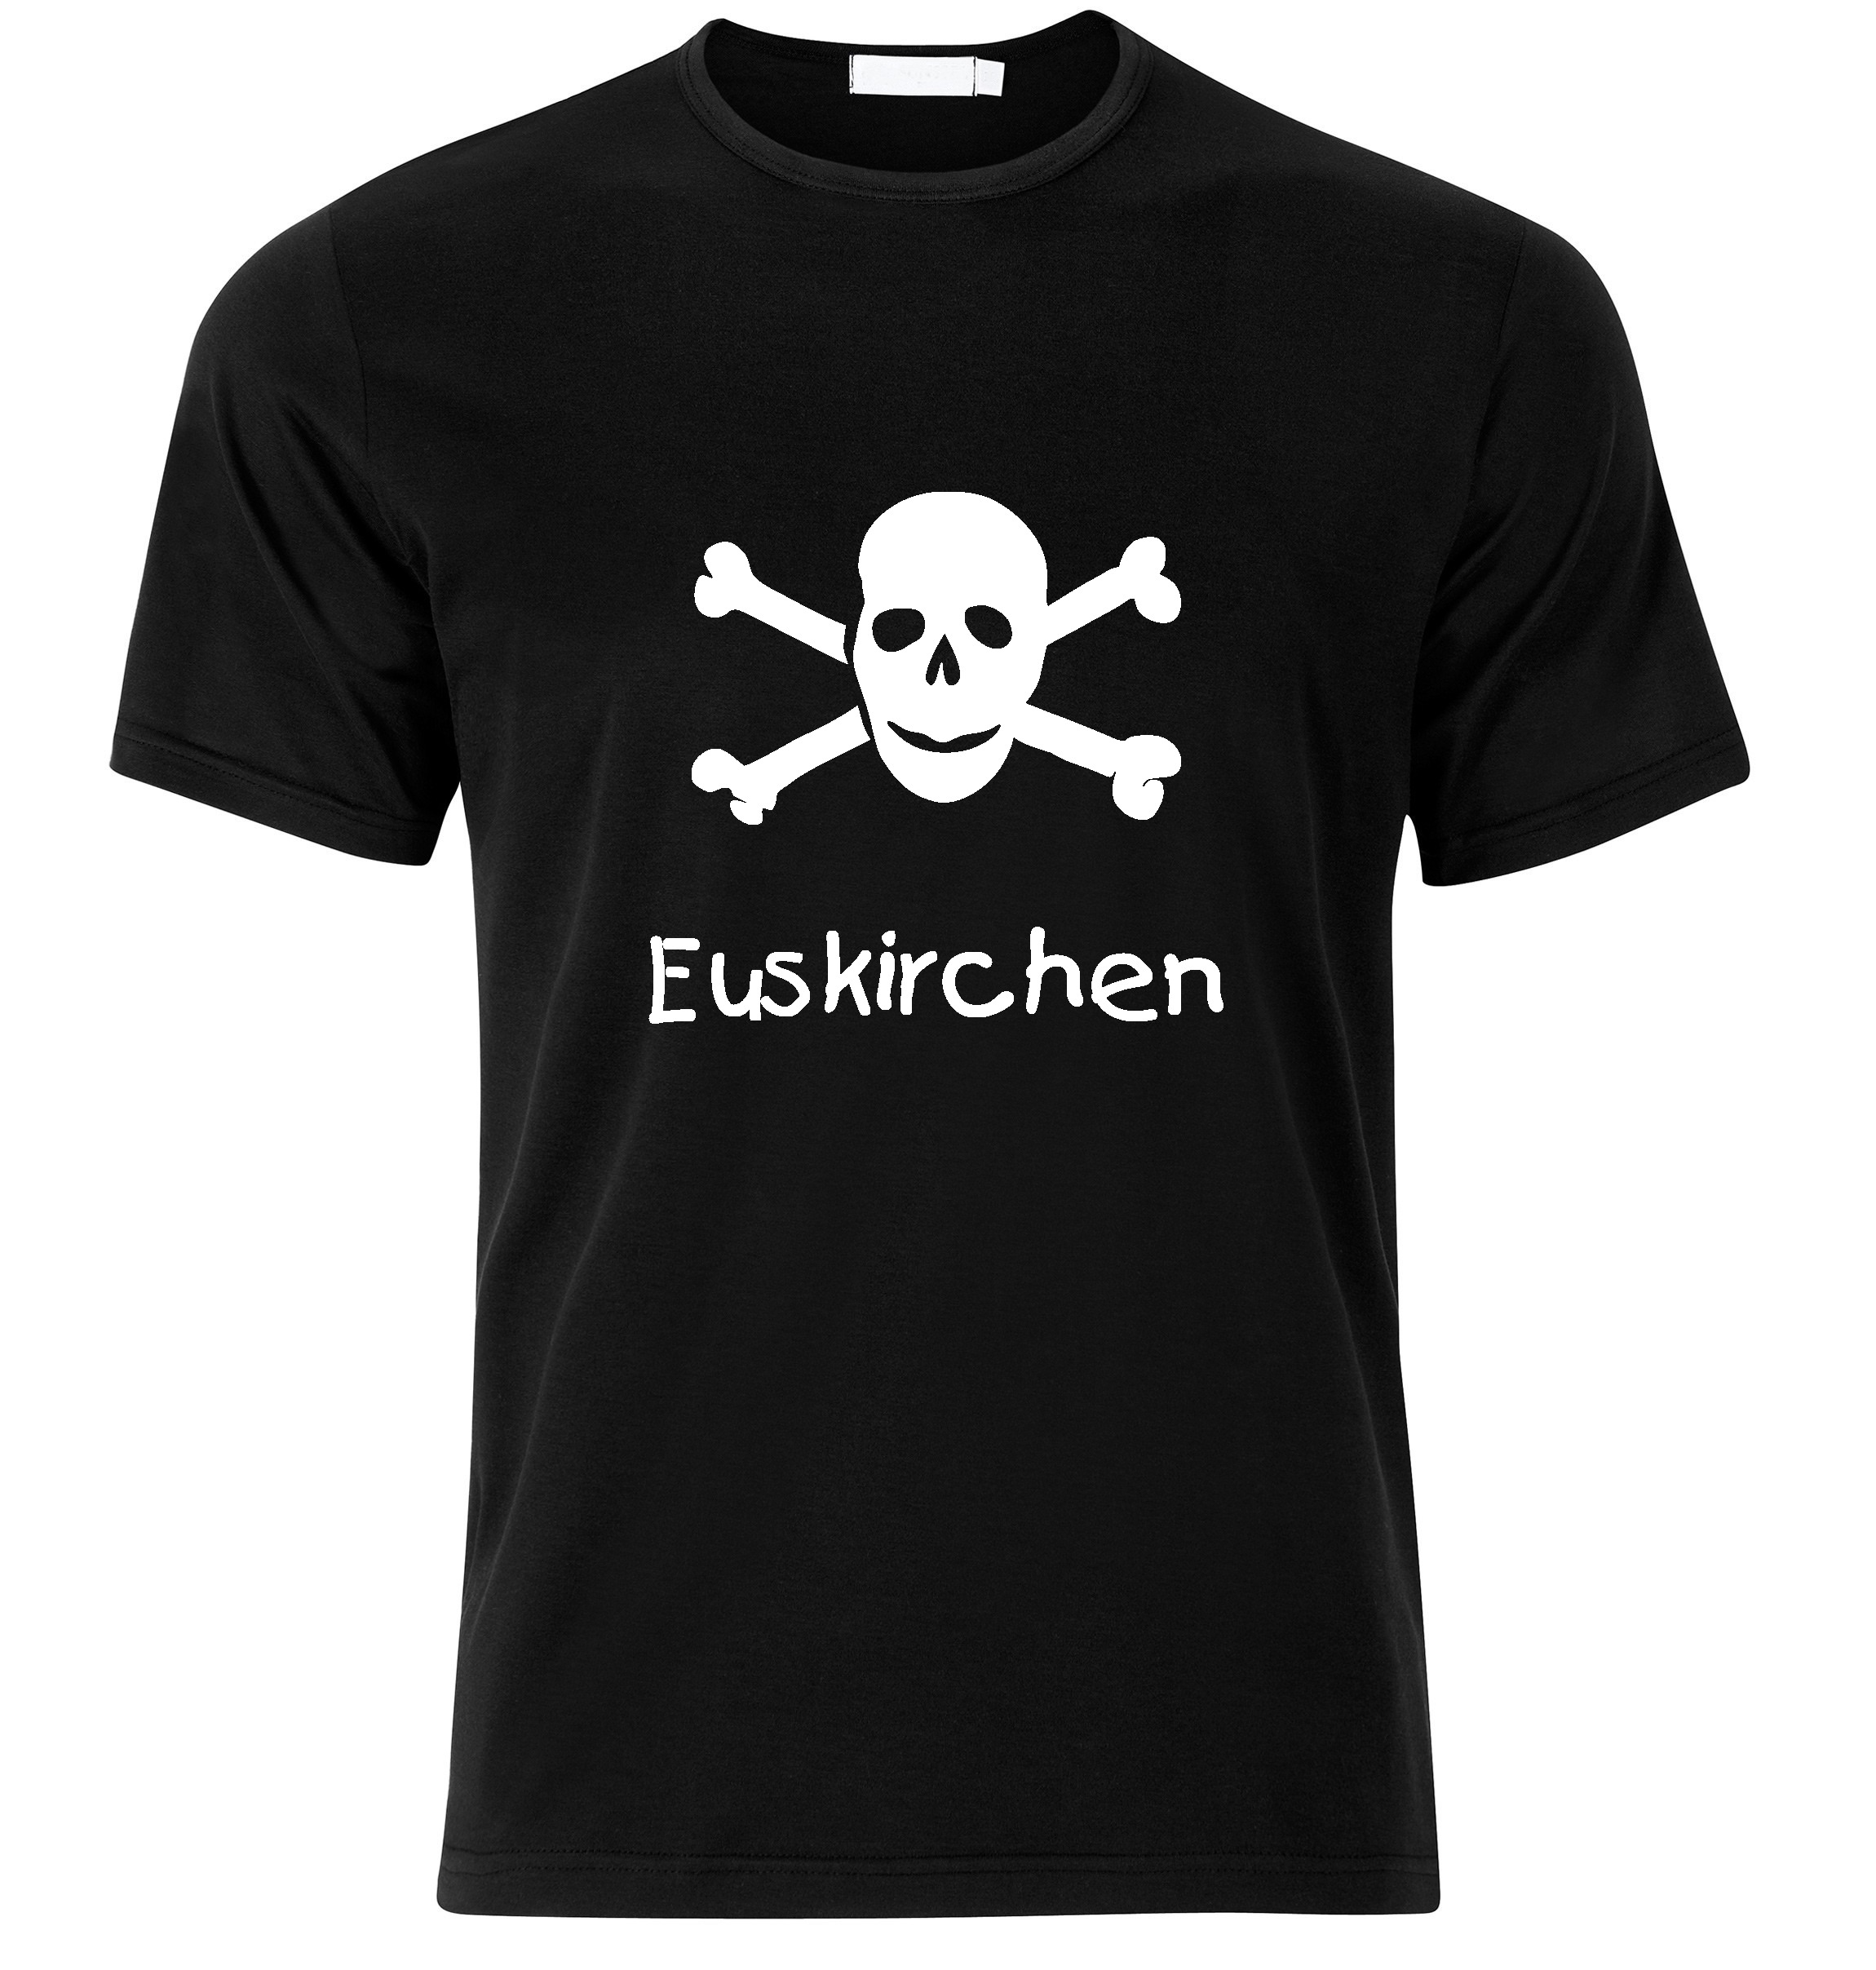 T-Shirt Euskirchen Jolly Roger, Totenkopf